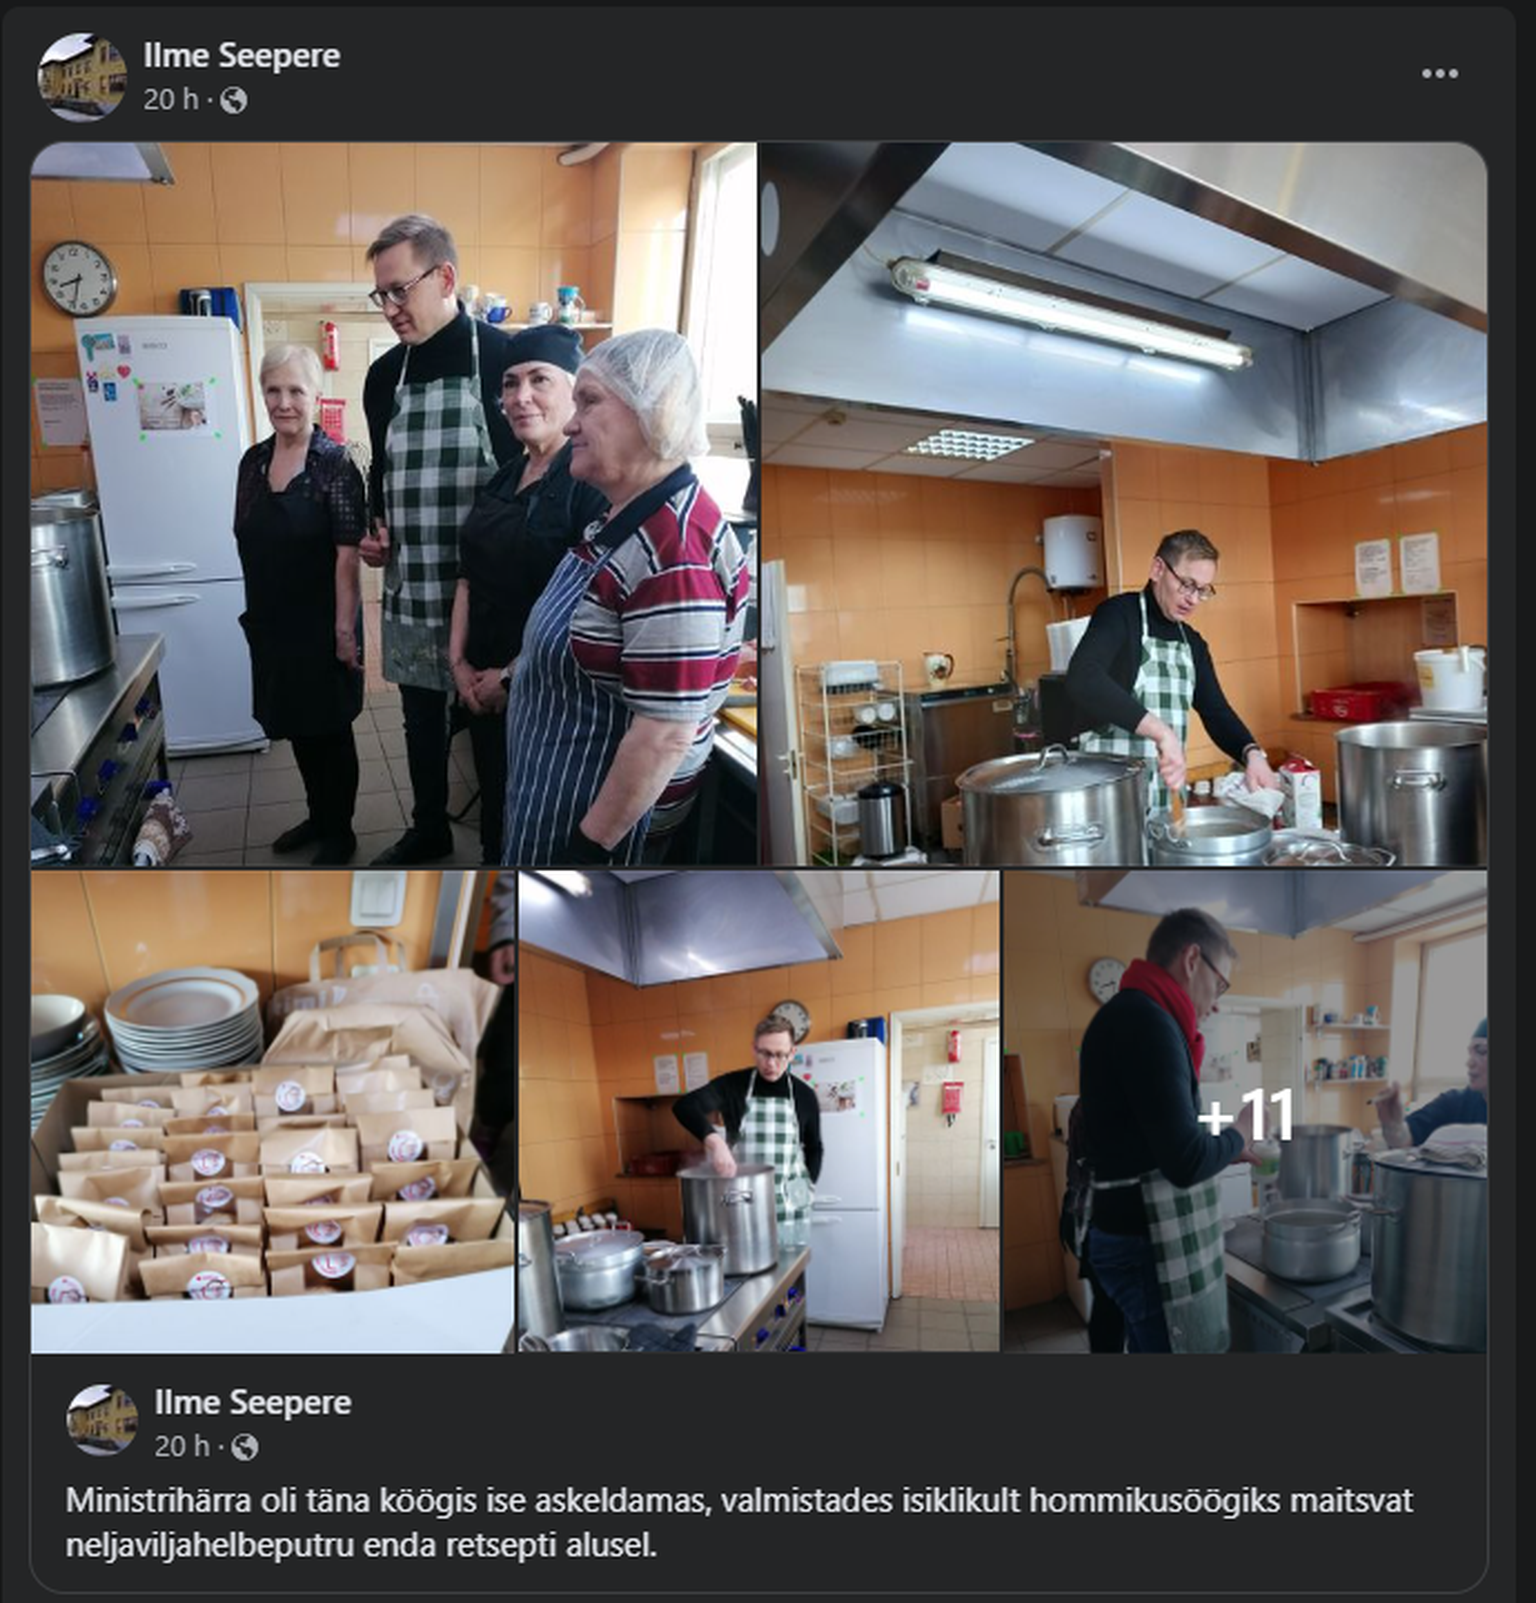 Фотографии визита министра были размещены на аккаунте в социальных сетях Ильме Сеэпере, которая скончалась в октябре 2021 года.